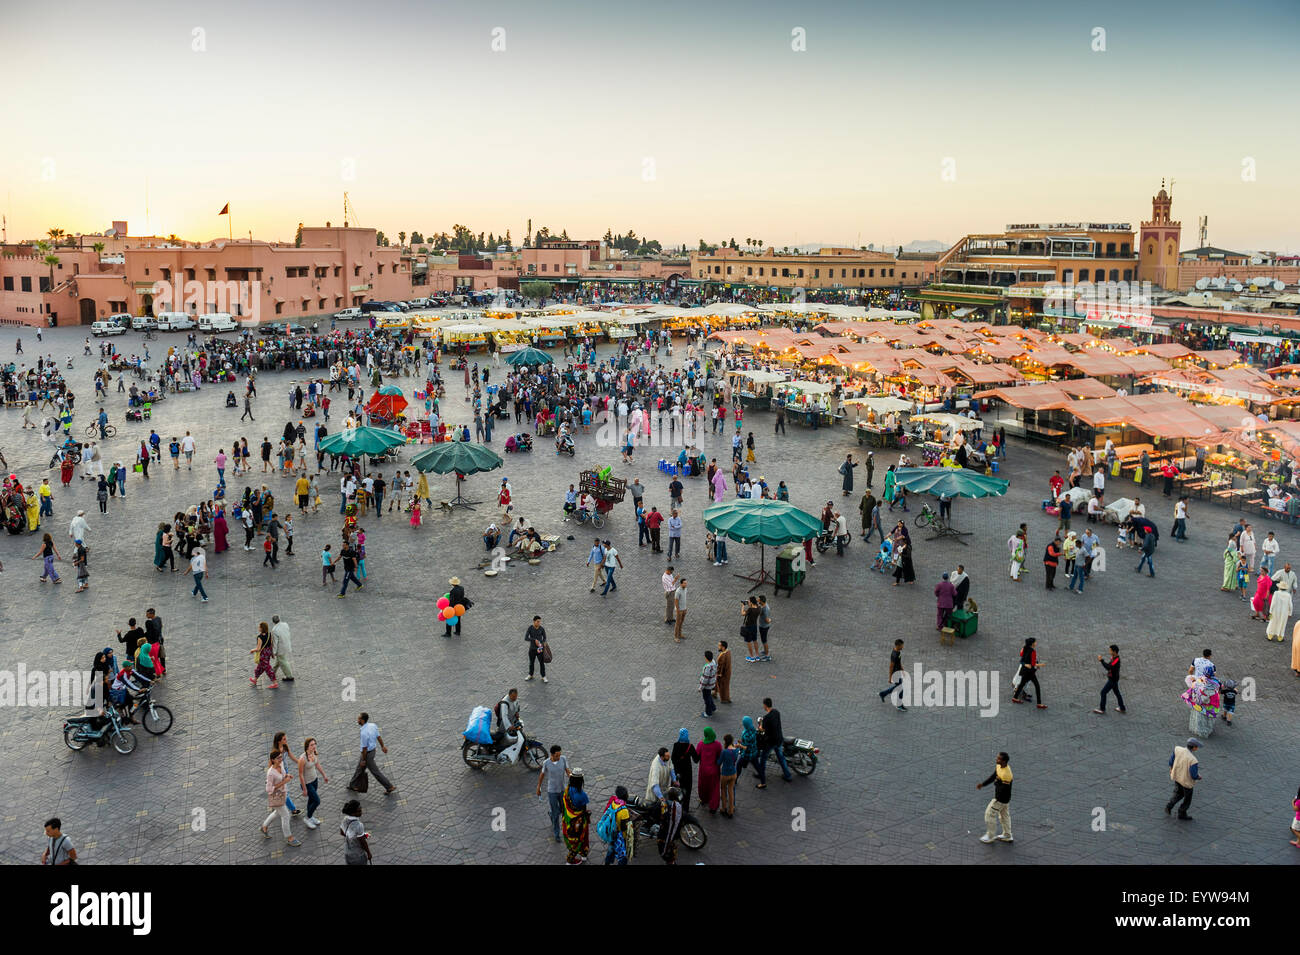 Viele Menschen auf dem Platz Djemaa el Fna, UNESCO-Weltkulturerbe, im Abendlicht, Marrakesch, Marokko Stockfoto